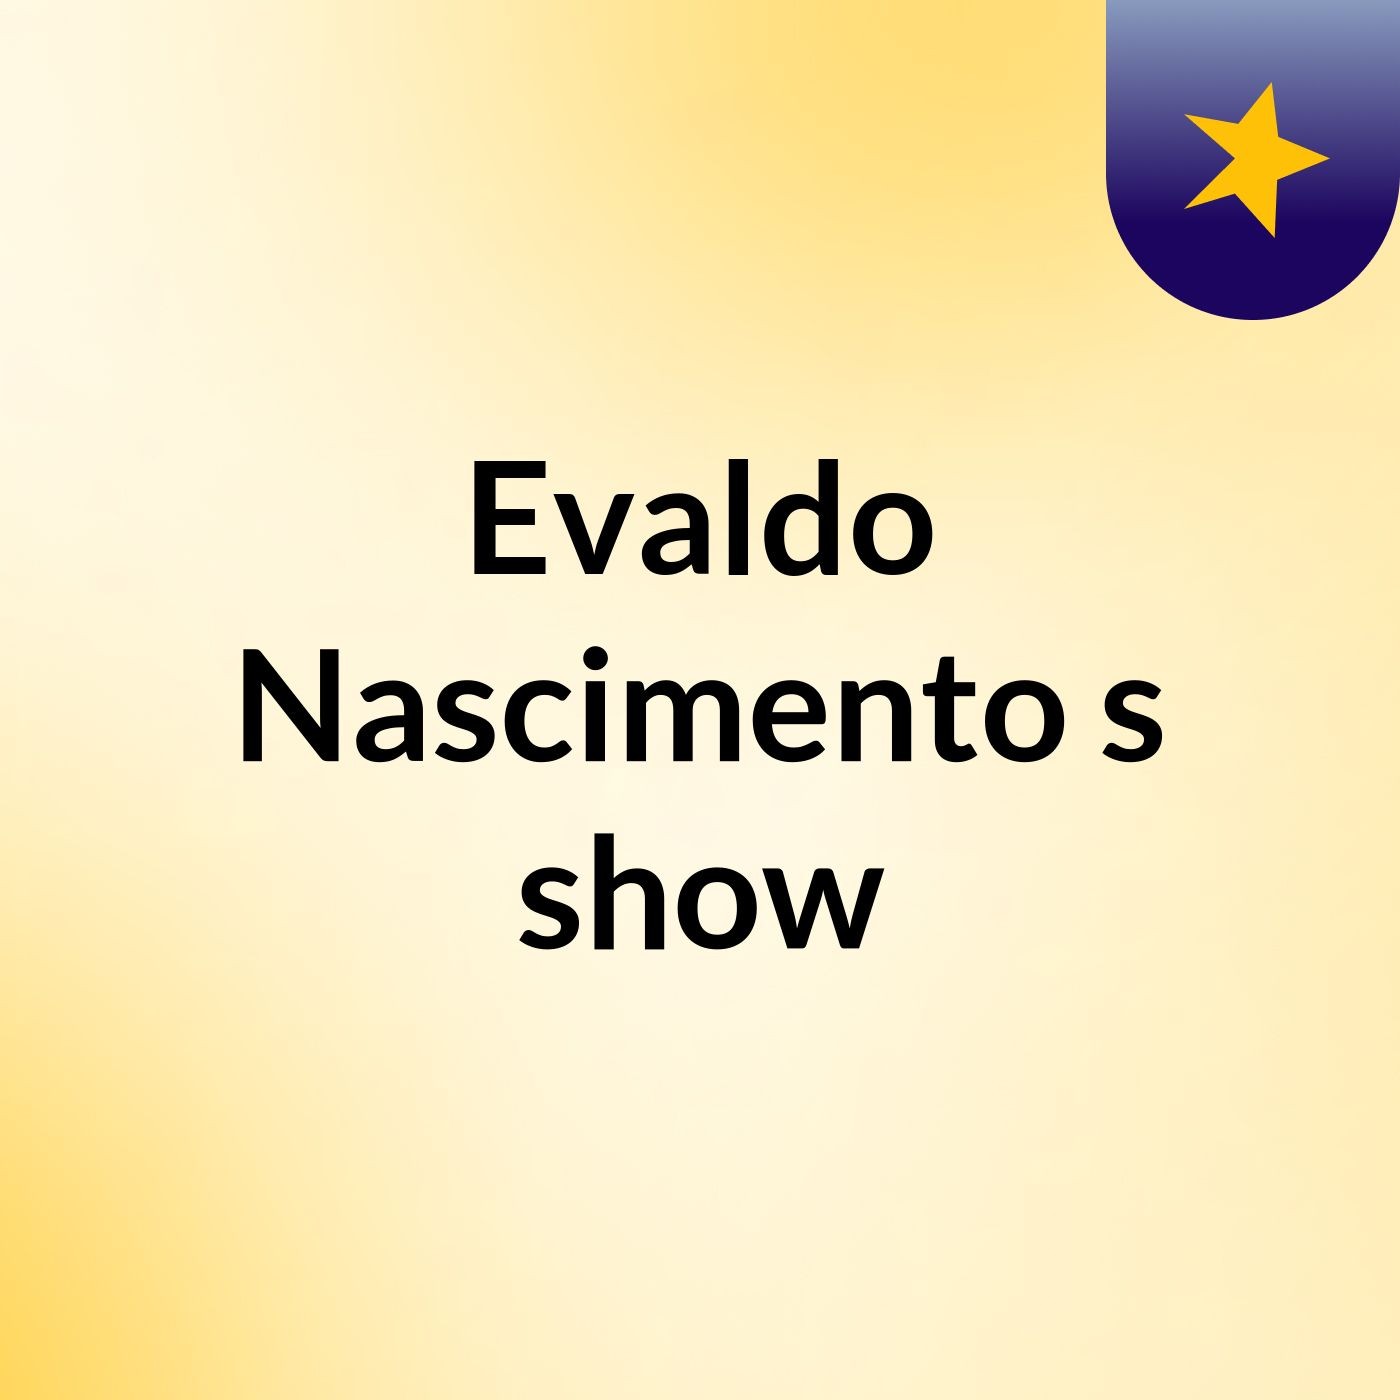 Evaldo Nascimento's show